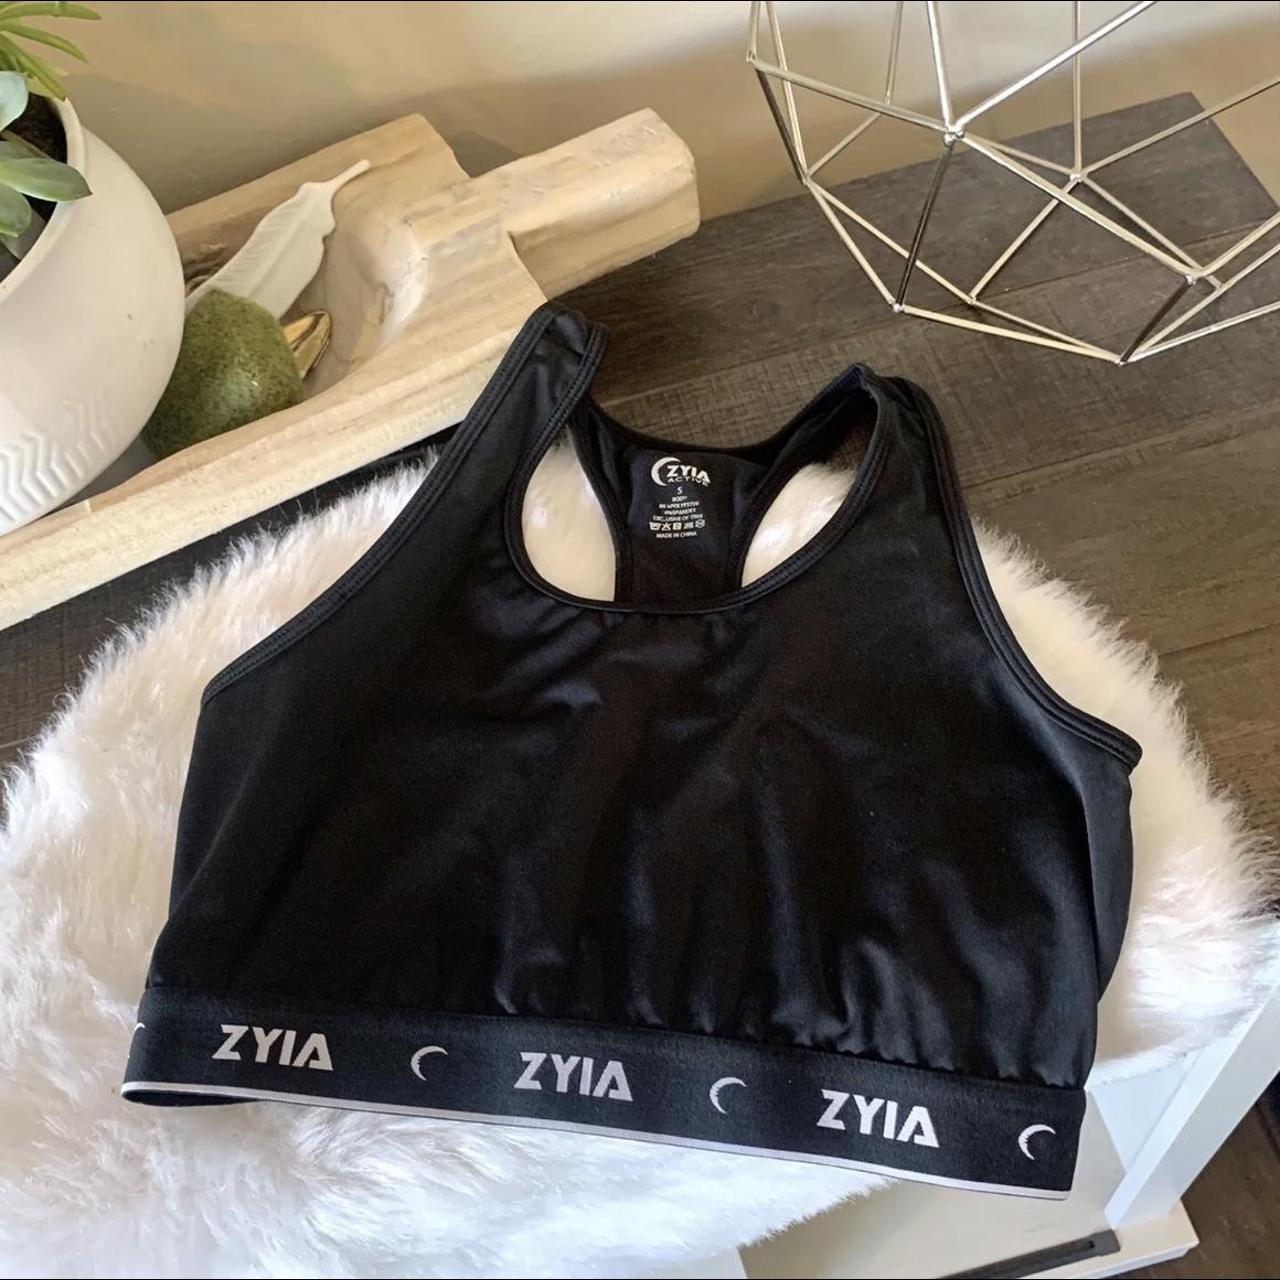 ZYIA, Intimates & Sleepwear, Zyia Sports Bra